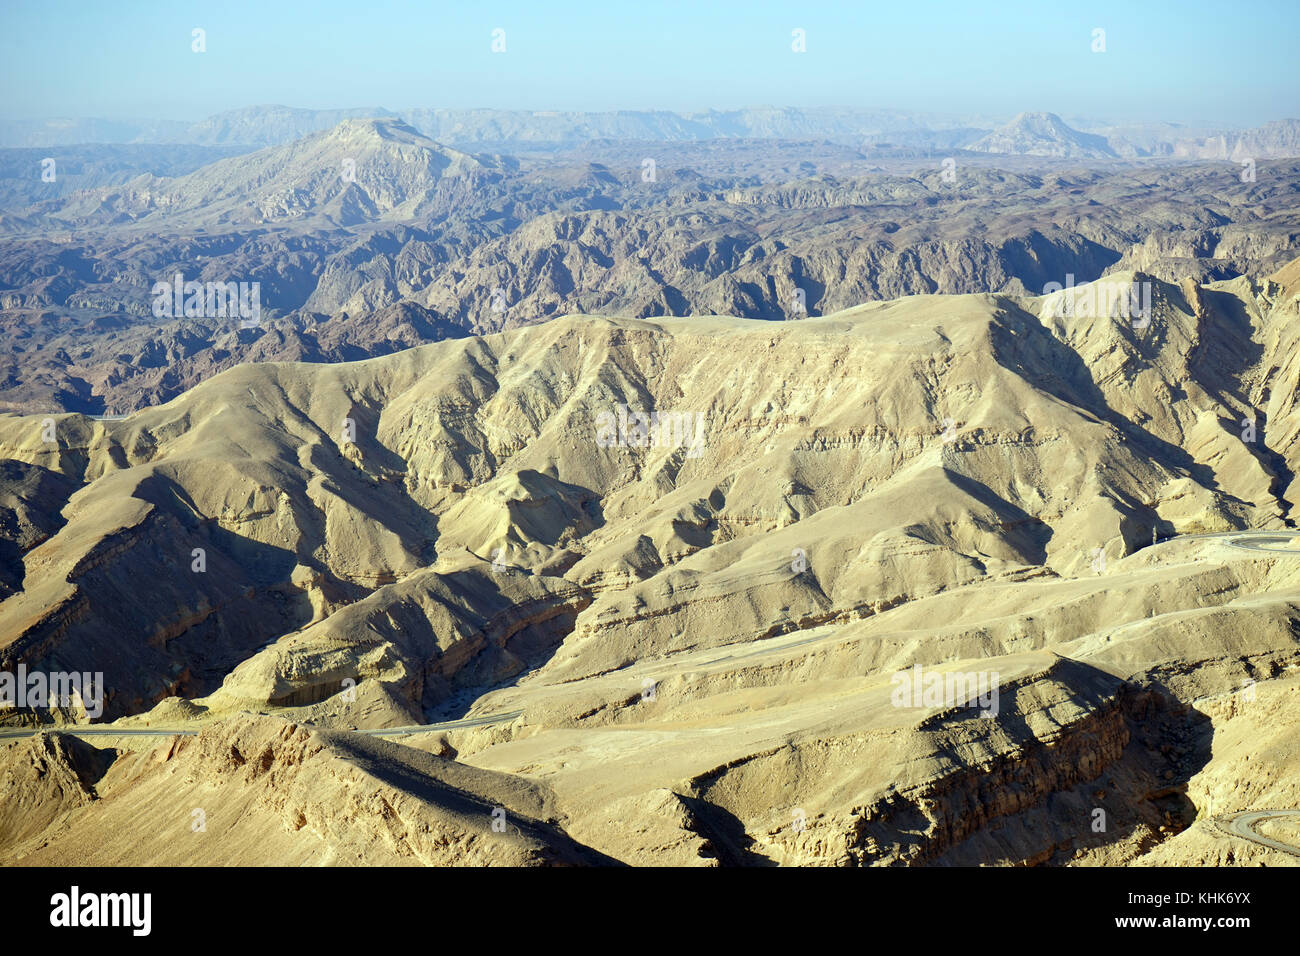 Eilat mountain range near Egypt, Israel Stock Photo